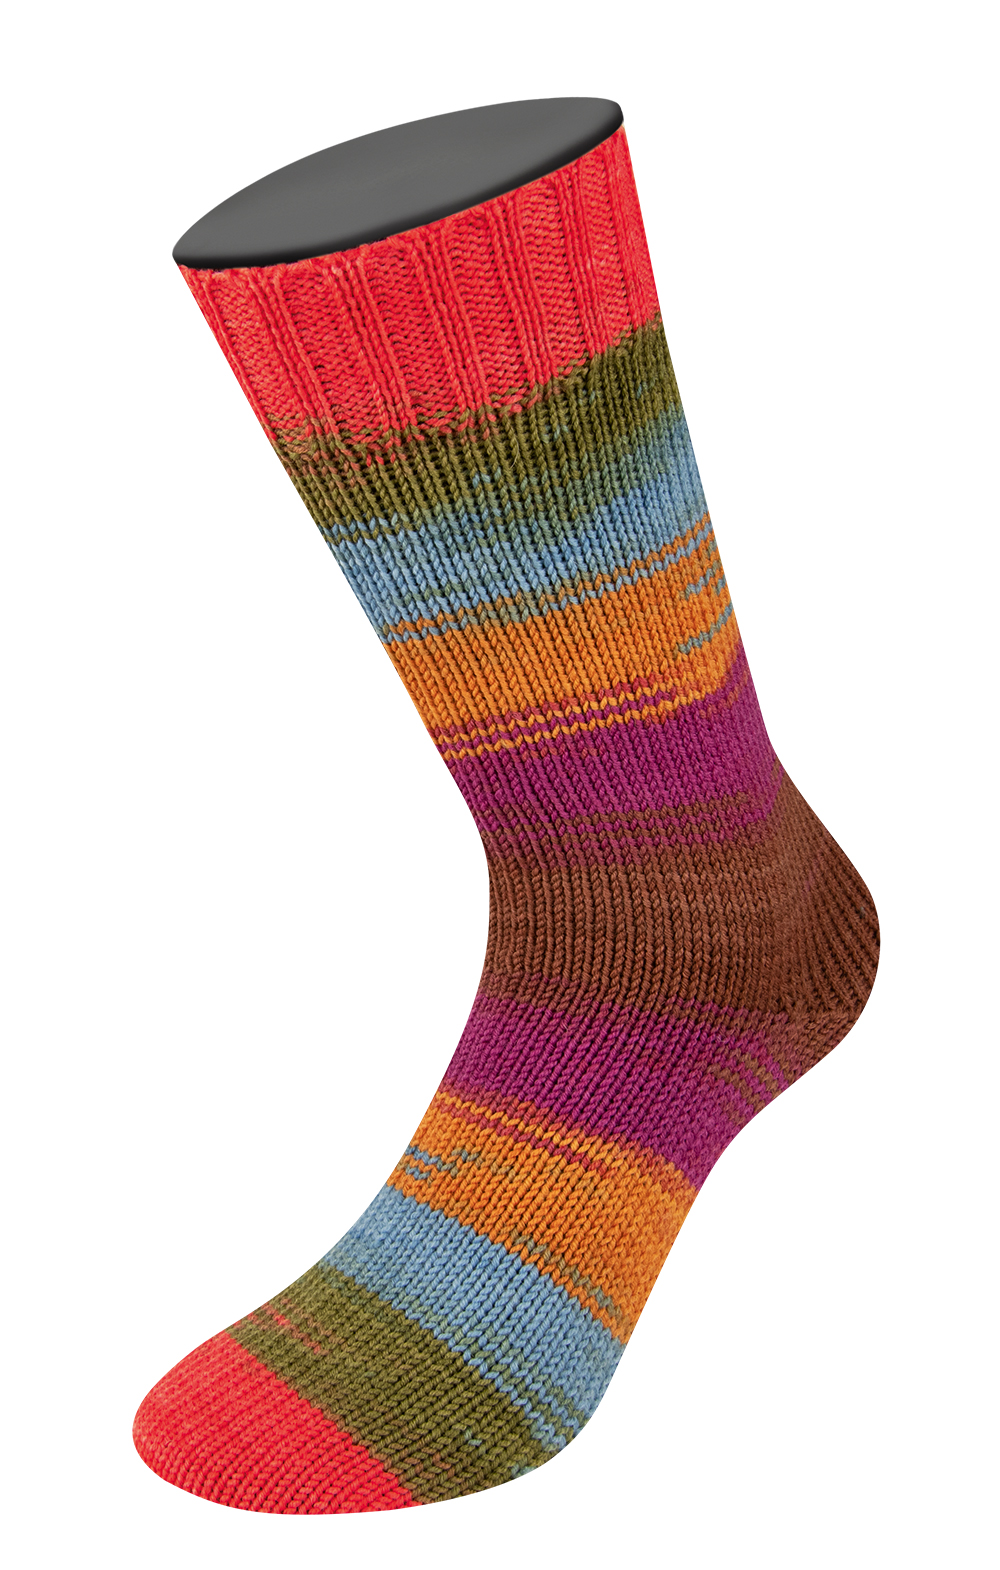 LANA GROSSA Cool Wool 4 Socks print  by Tanja Steinbach Farbe 7797 Hellrot/Olivgrün/Taubenblau/Ockergelb/Orchidee/Nougat